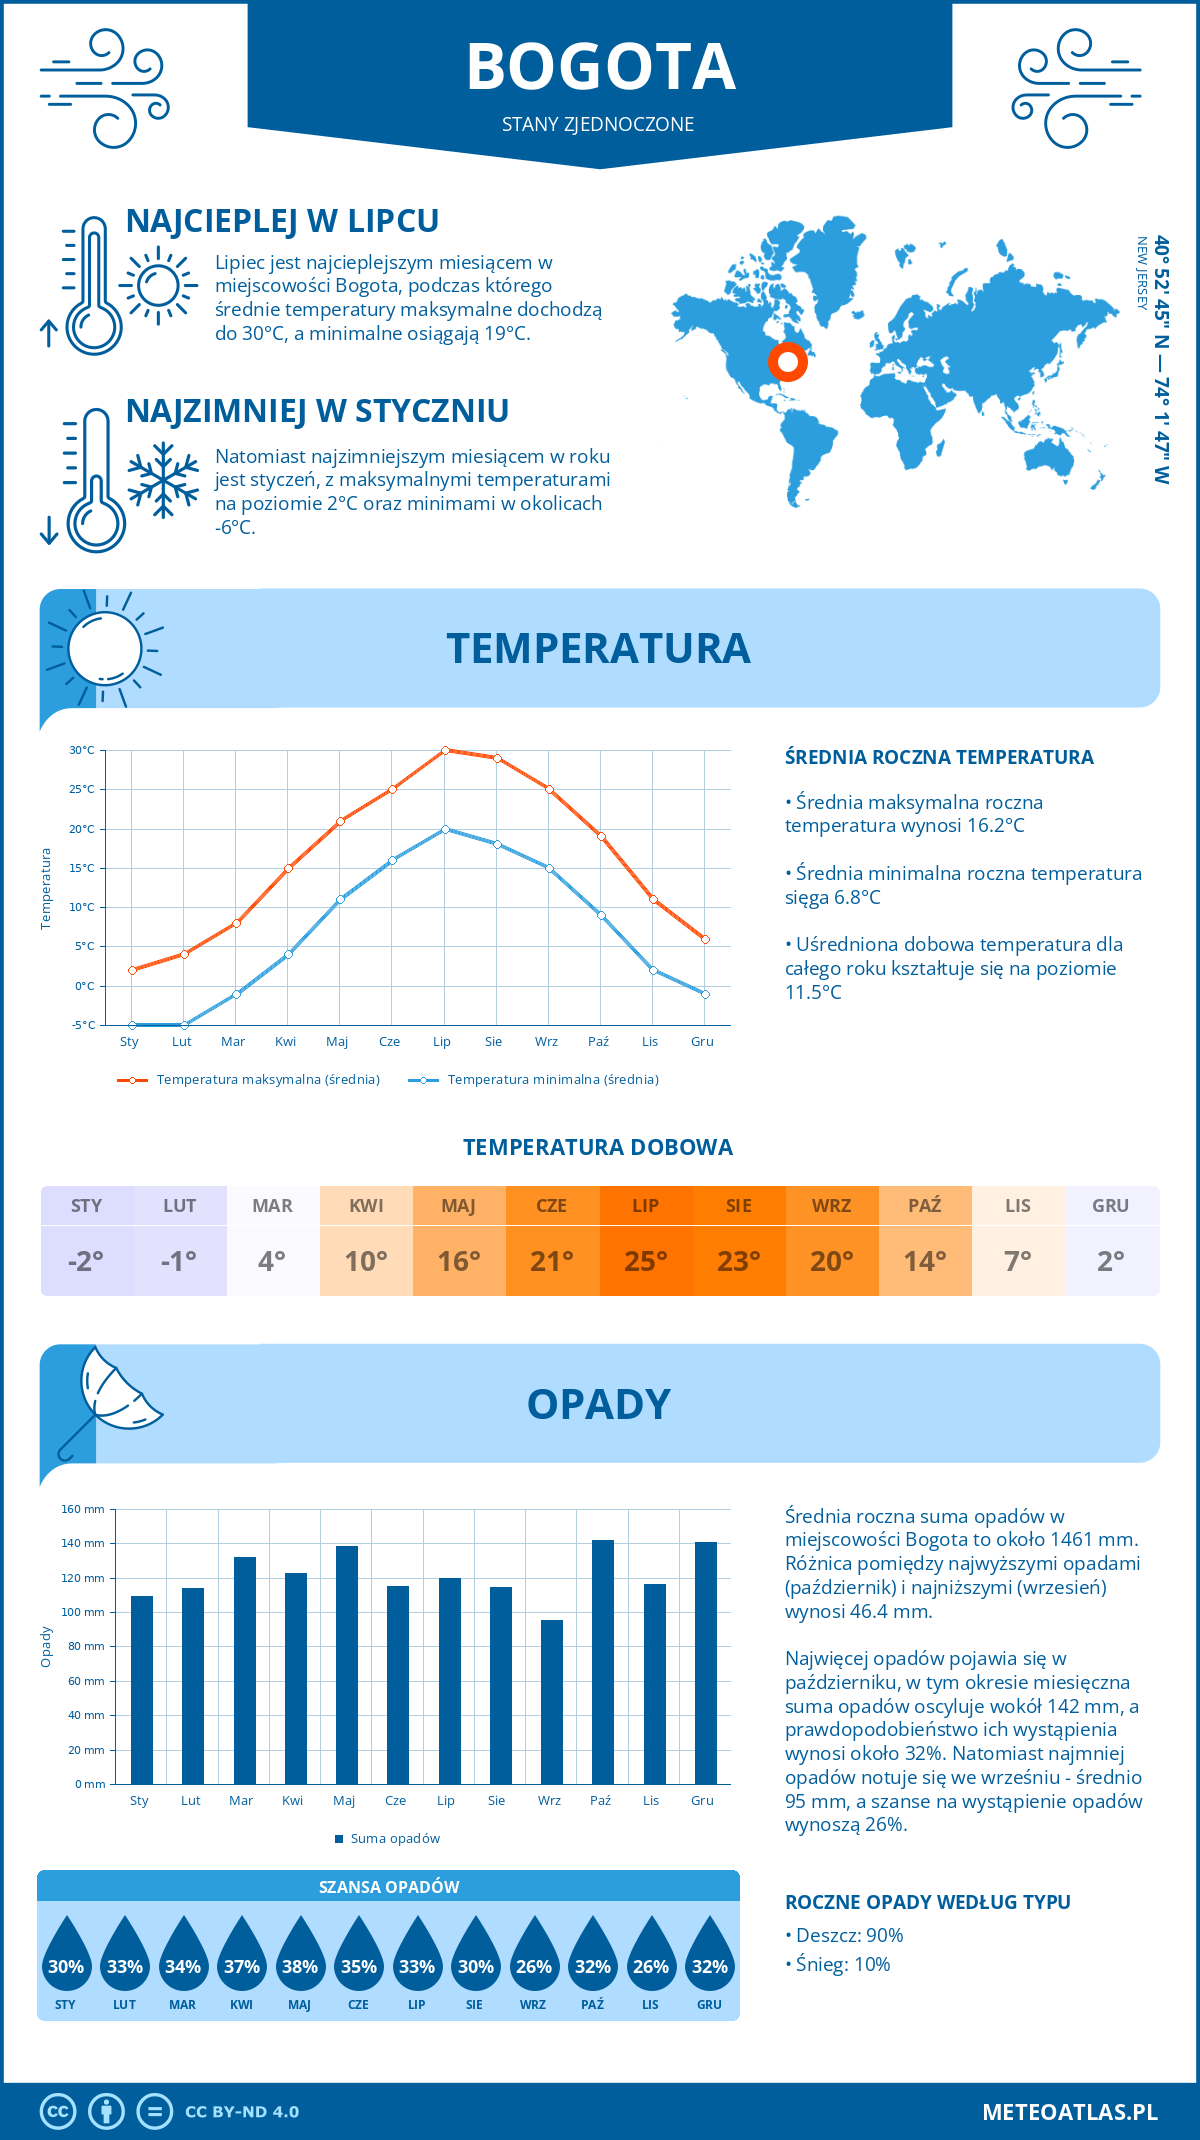 Pogoda Bogota (Stany Zjednoczone). Temperatura oraz opady.